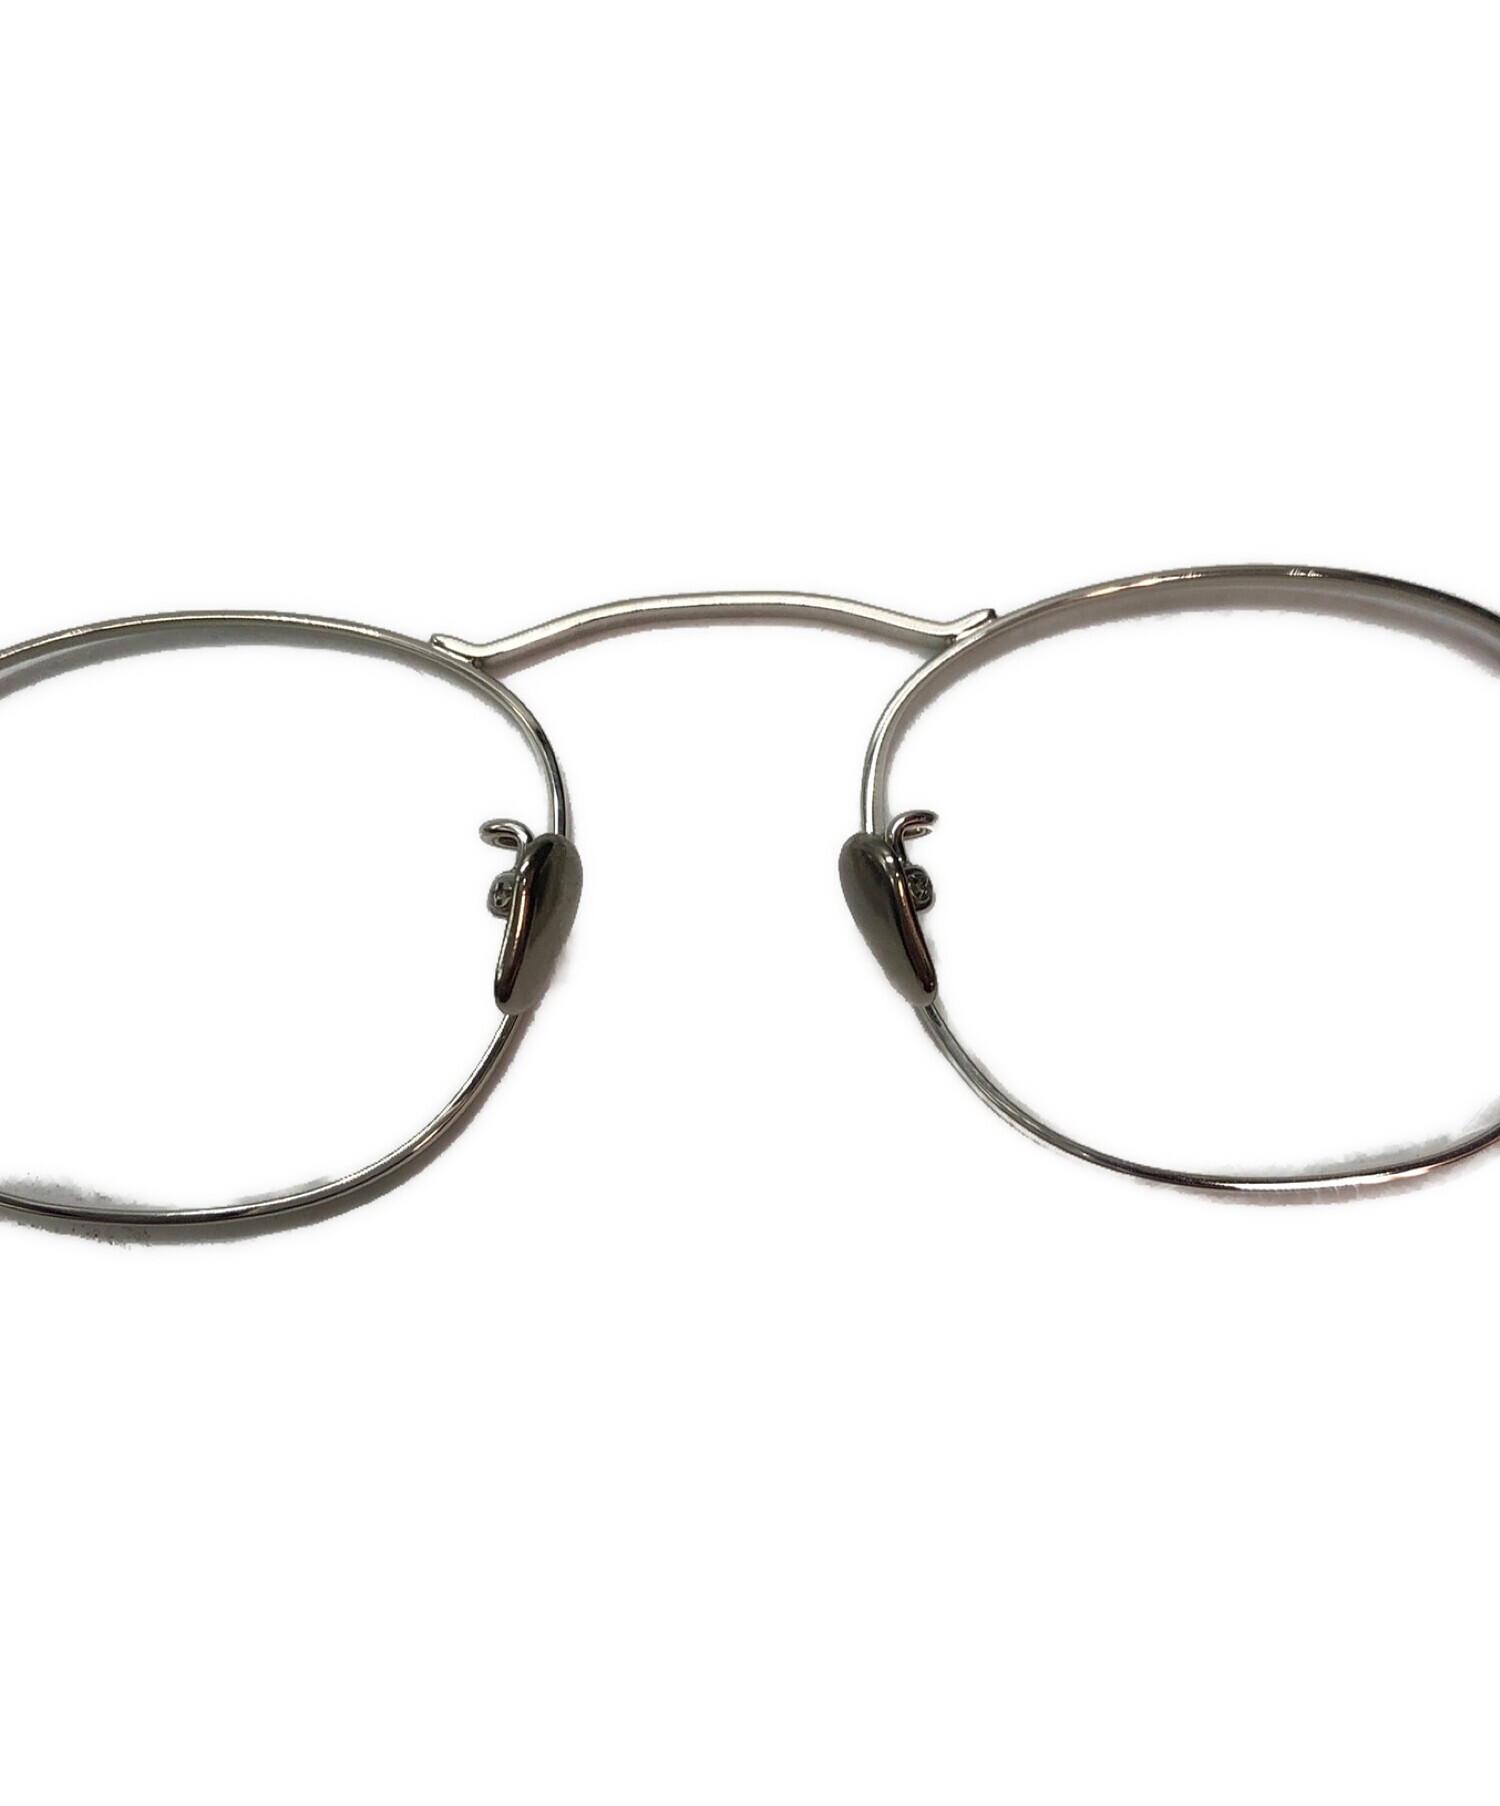 O.J. GLOBE SPECS OPTICAL Co . (オールドジョー グローブスペックス オプティカル) 眼鏡/サングラス